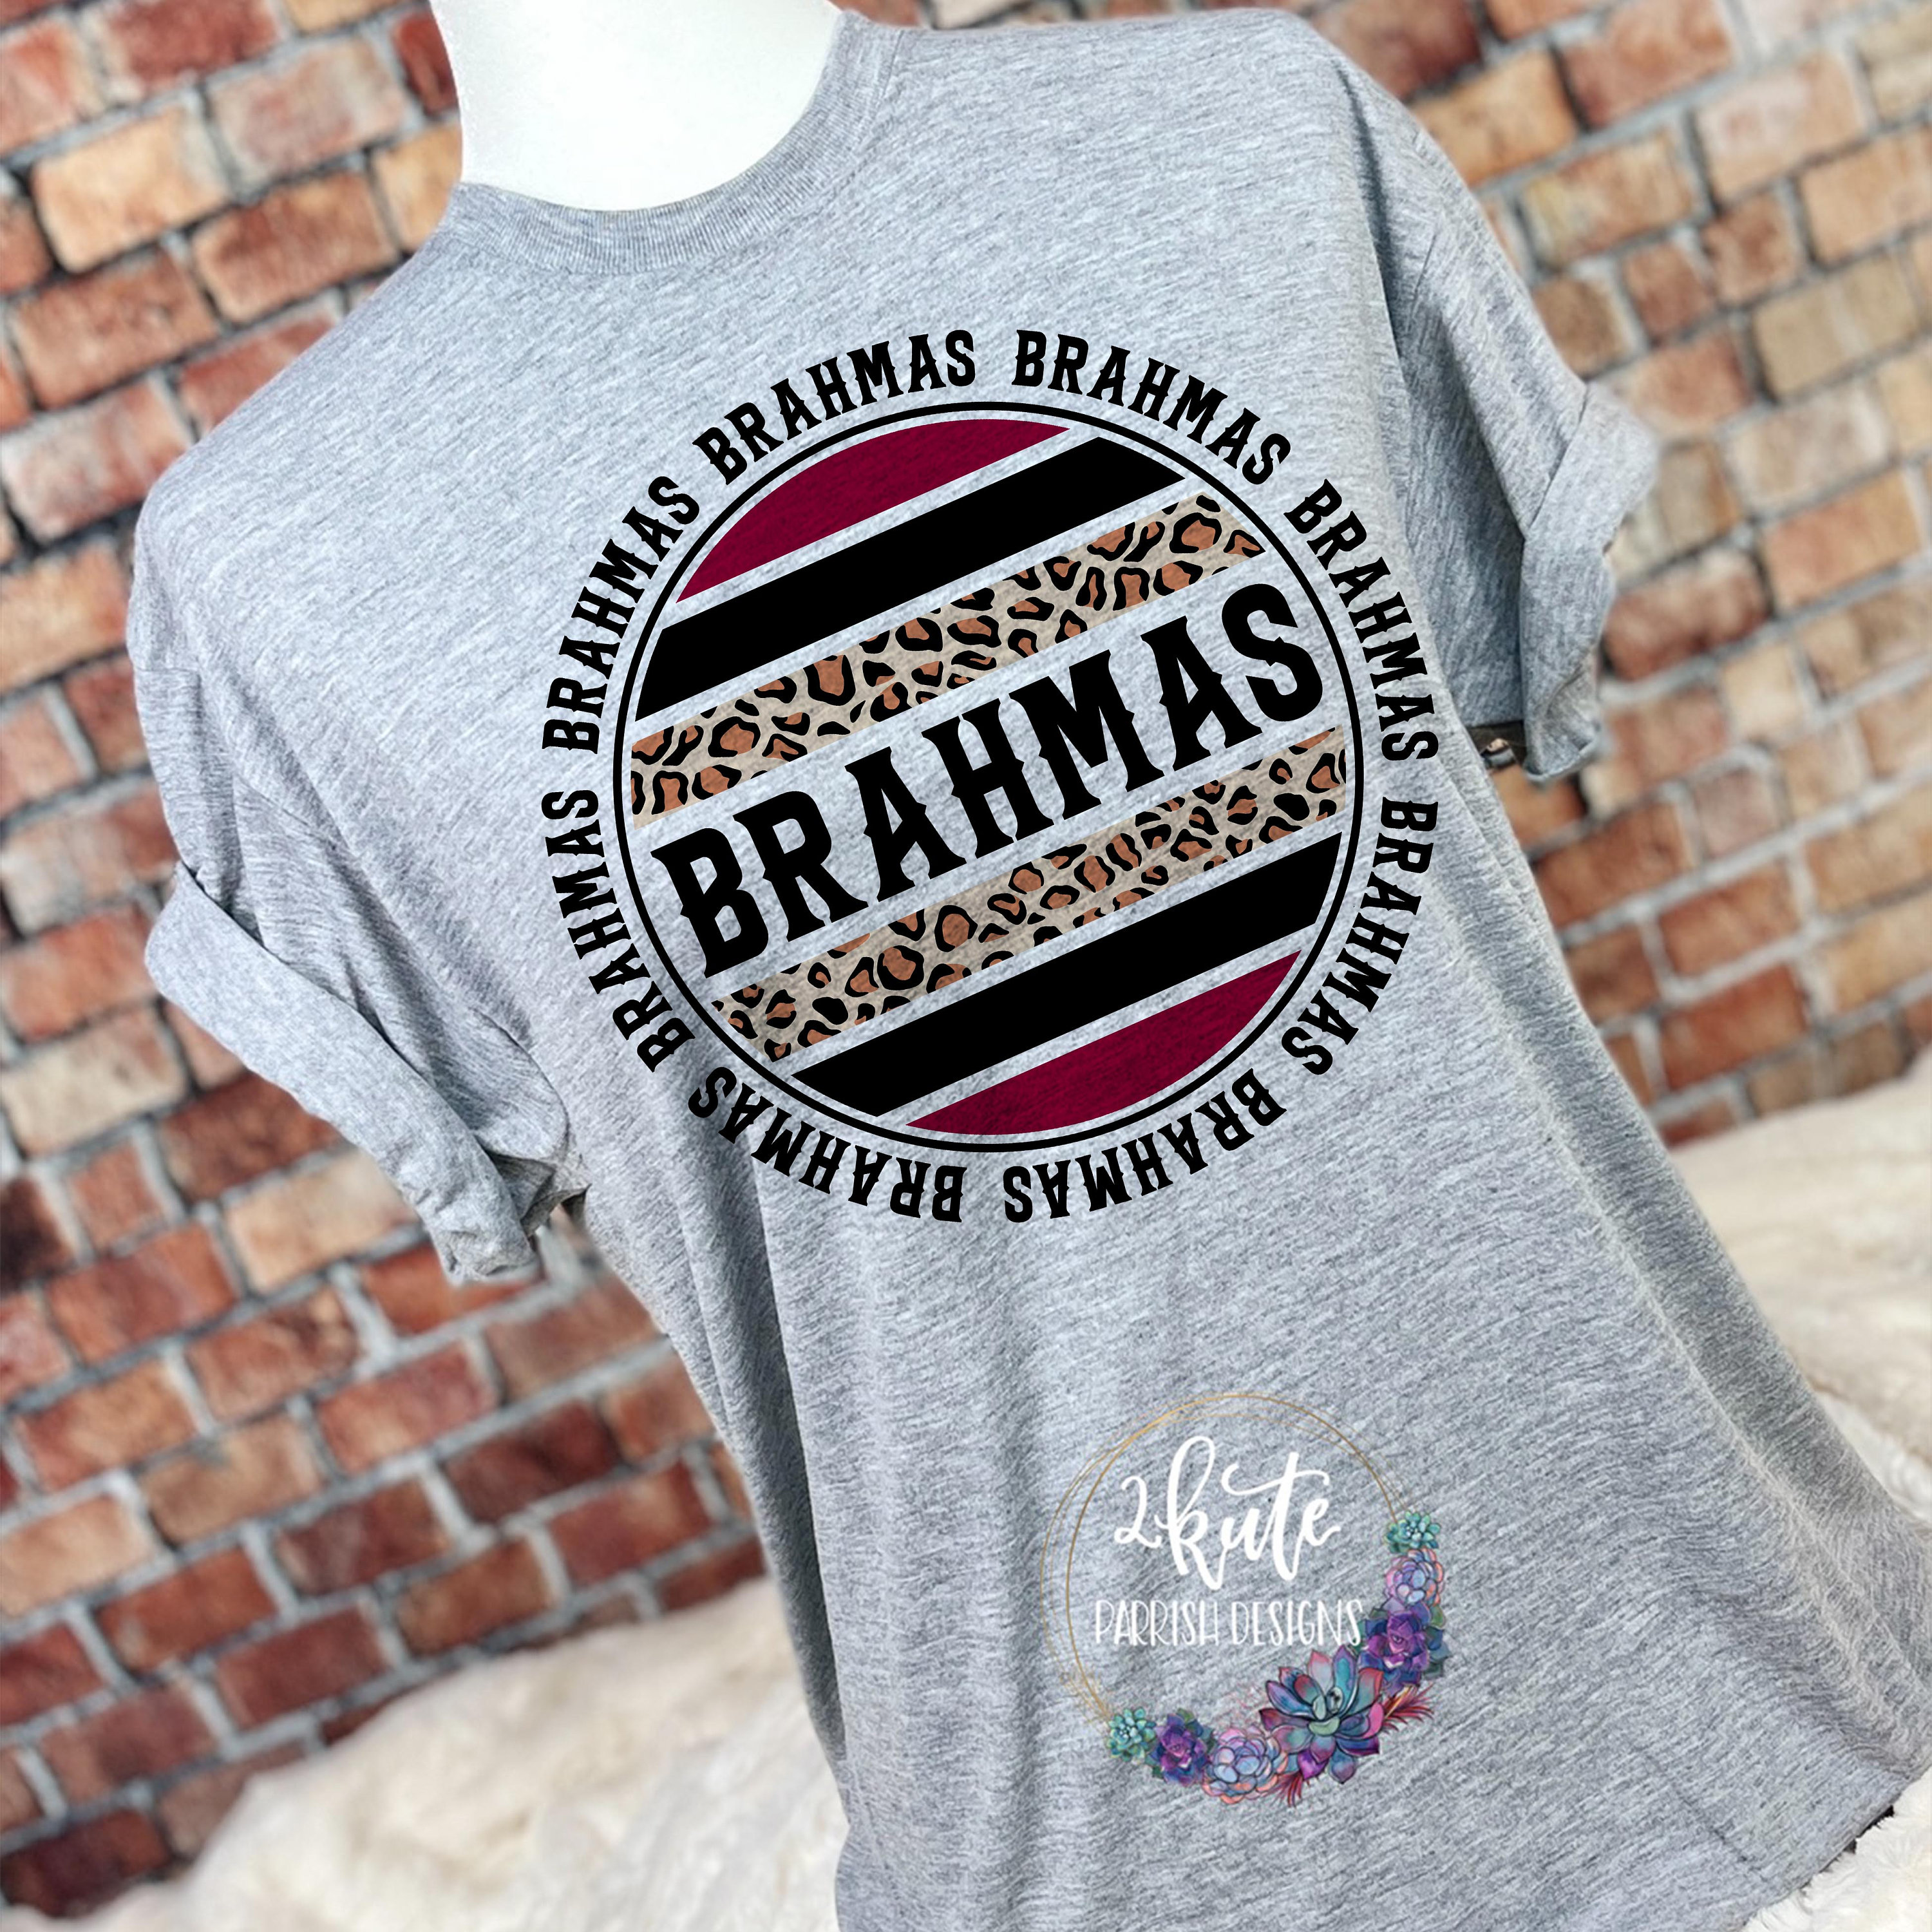 Brahmas Shirts Brahmas Spirit Shirt Brahmas Mascot Leopard 